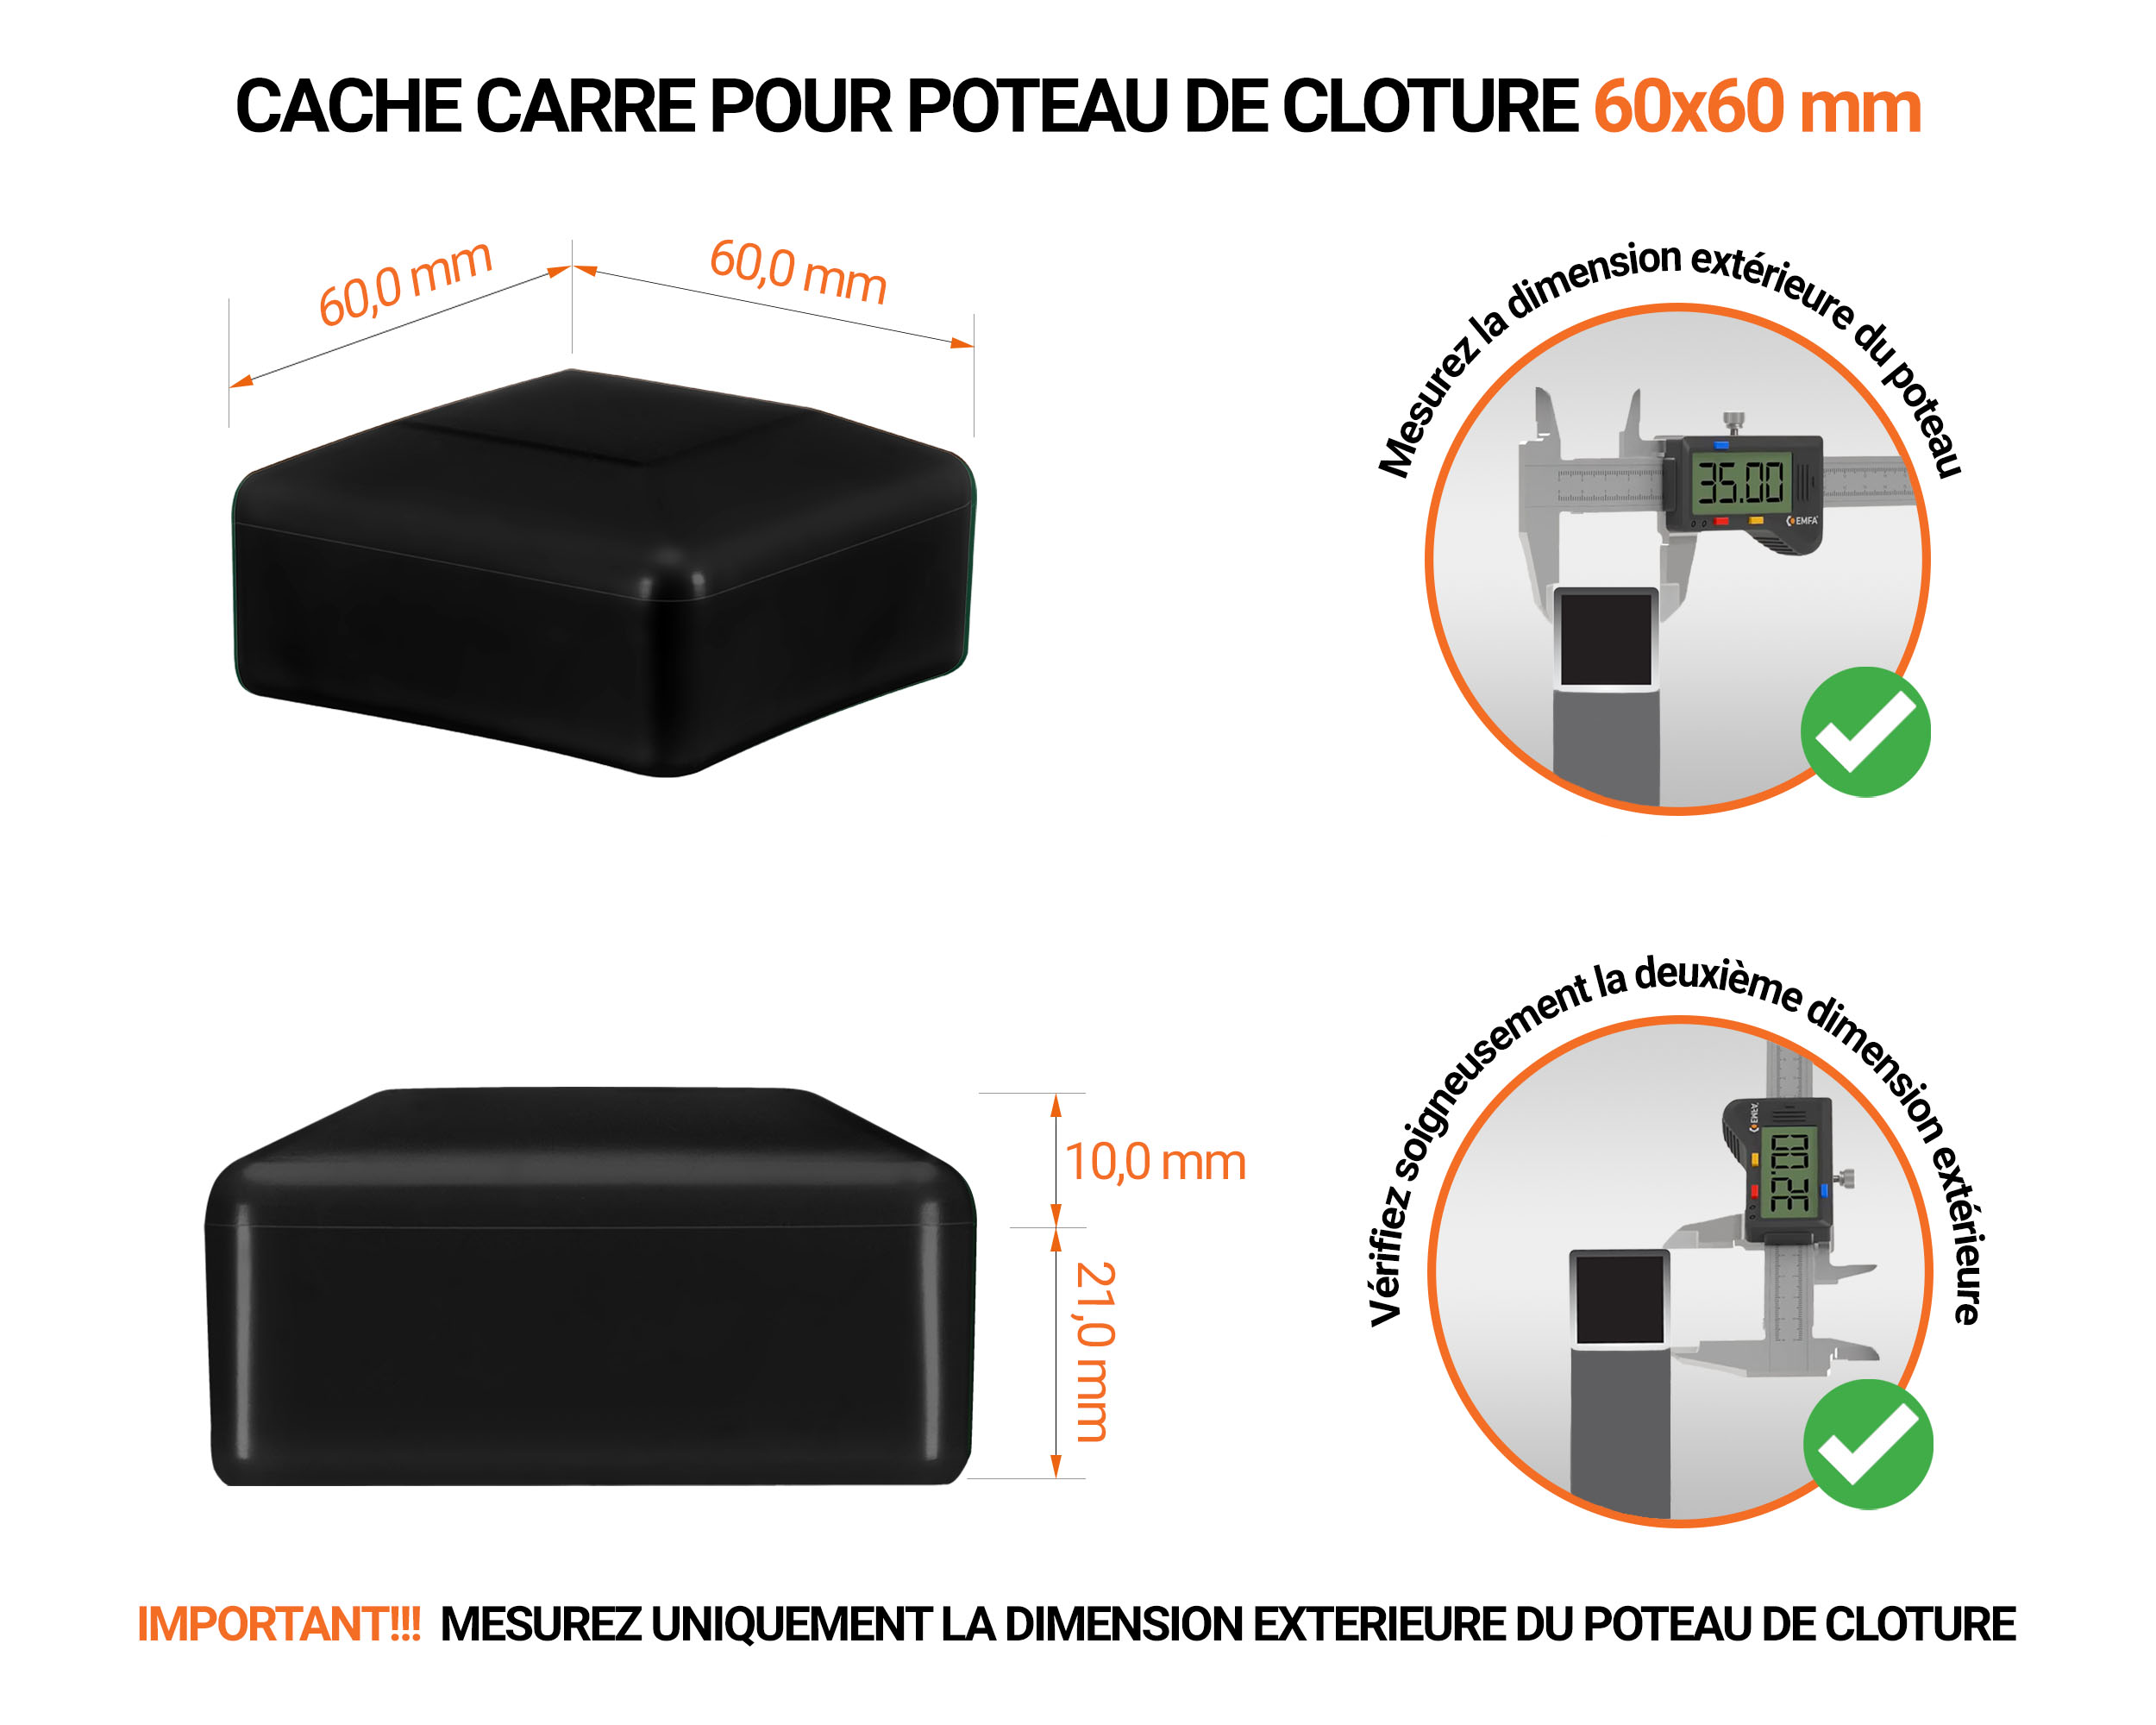 Capuchons pour poteaux carrés de couleur noir. Embout plastique pour des dimensions de poteaux de 60x60 mm avec dimensions et guide de mesure correcte du capuchon.